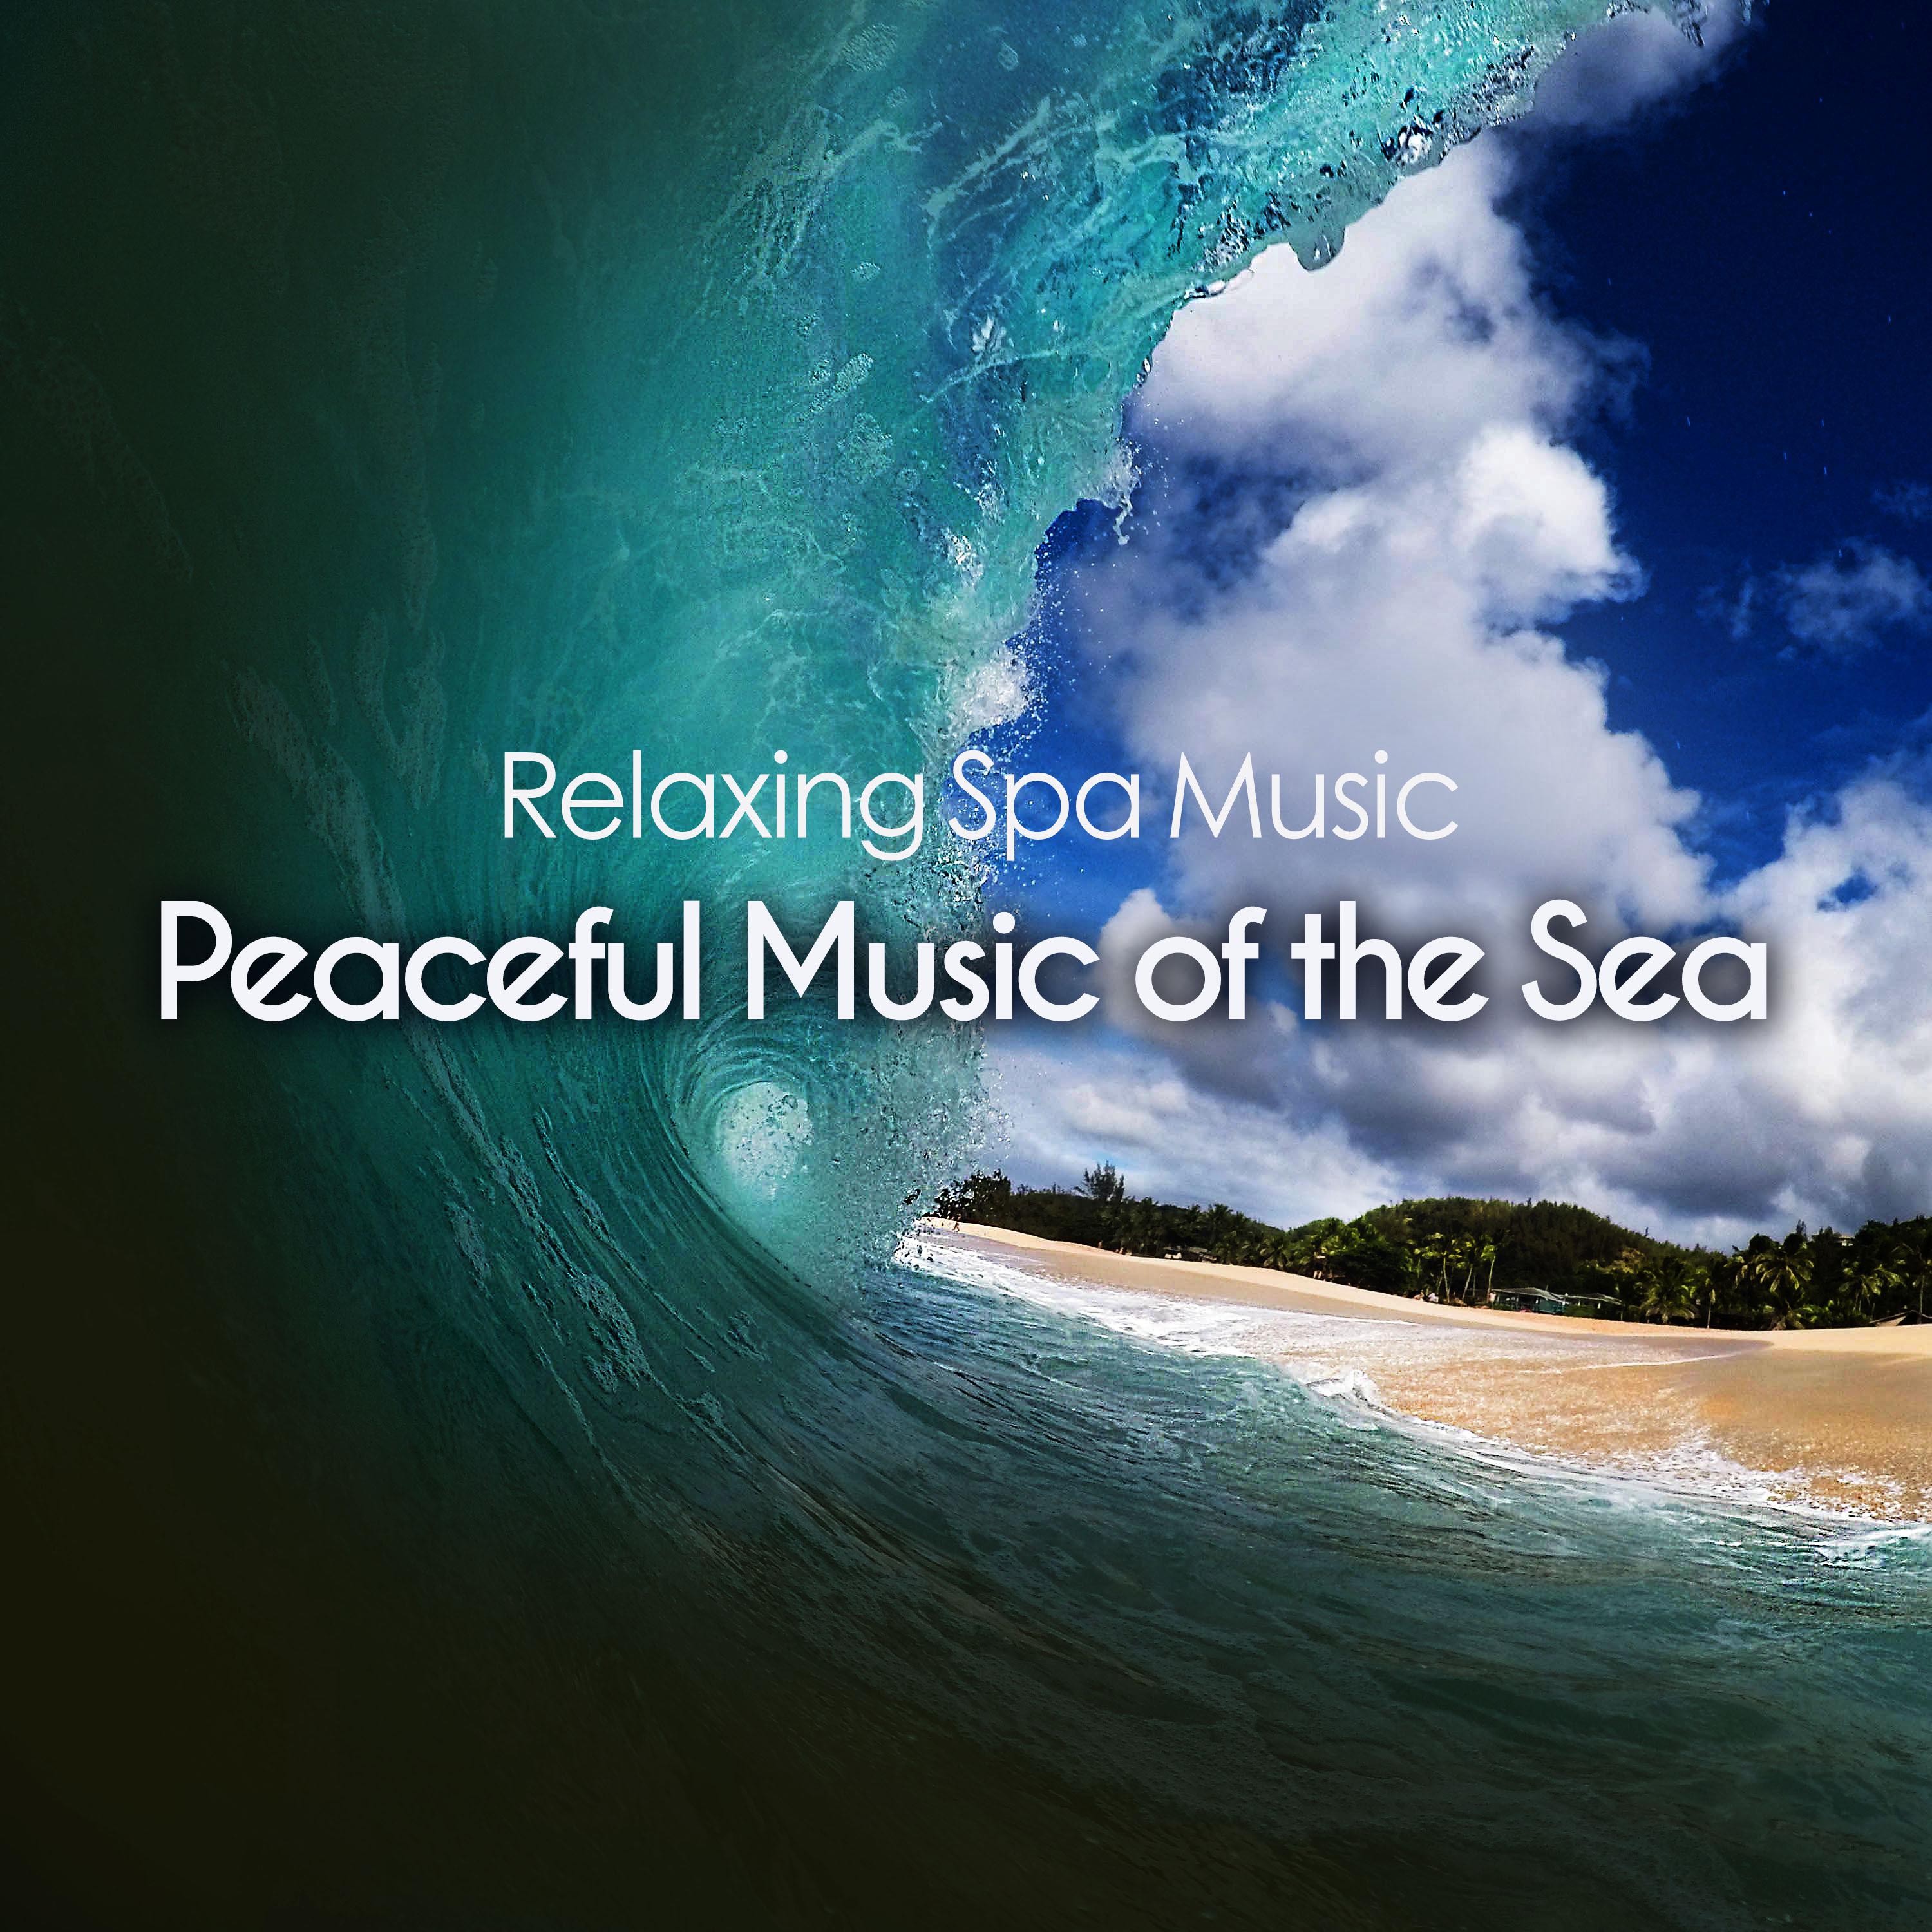 Peaceful Music of the Sea